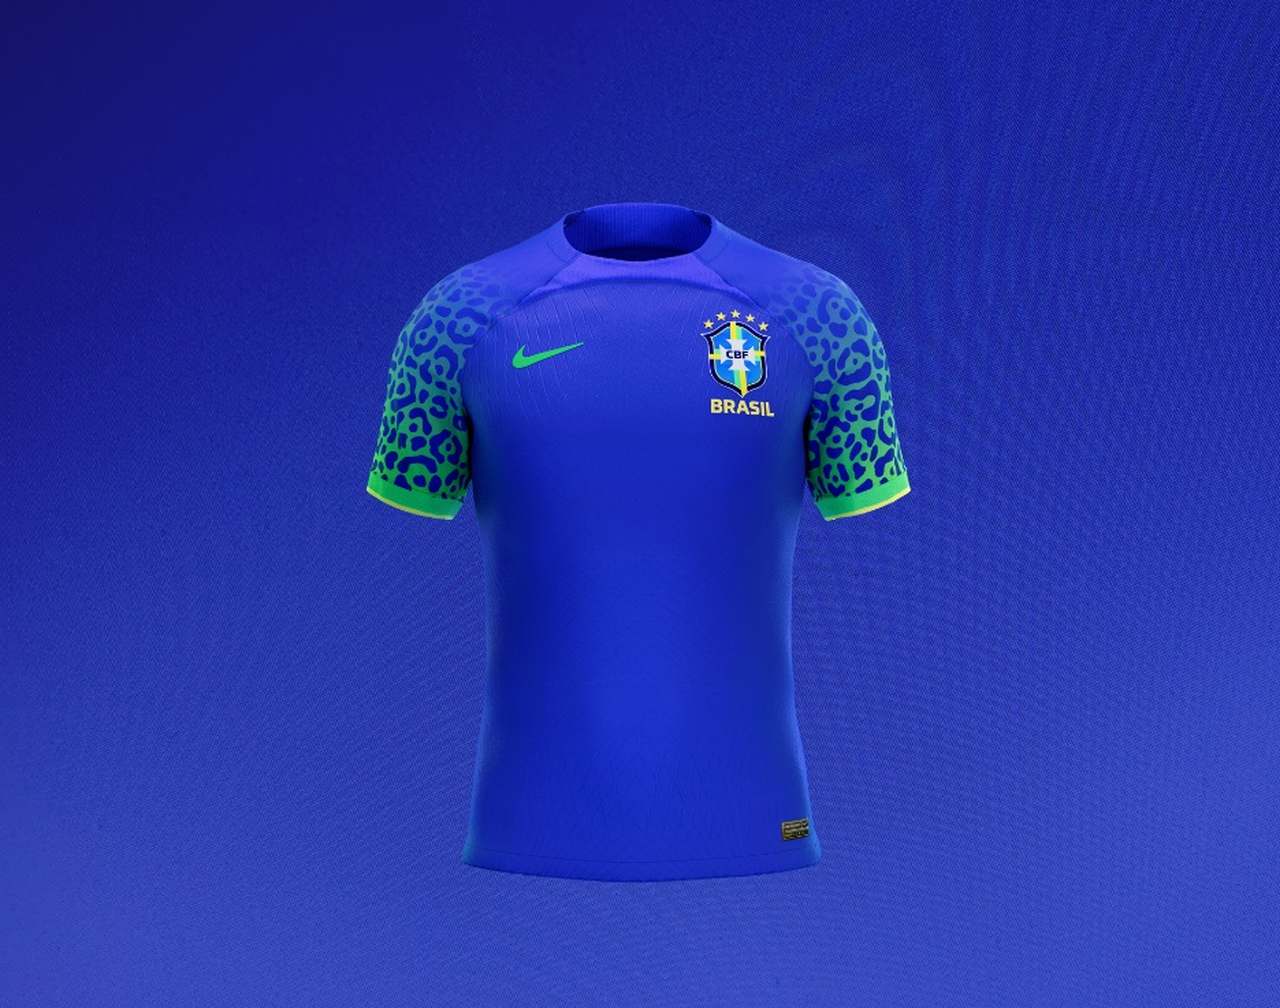 Eve petroleum Travel agency Sucesso de vendas, camisa azul do Brasil esgota e Nike corre para  reabastecer o mercado - MKT Esportivo